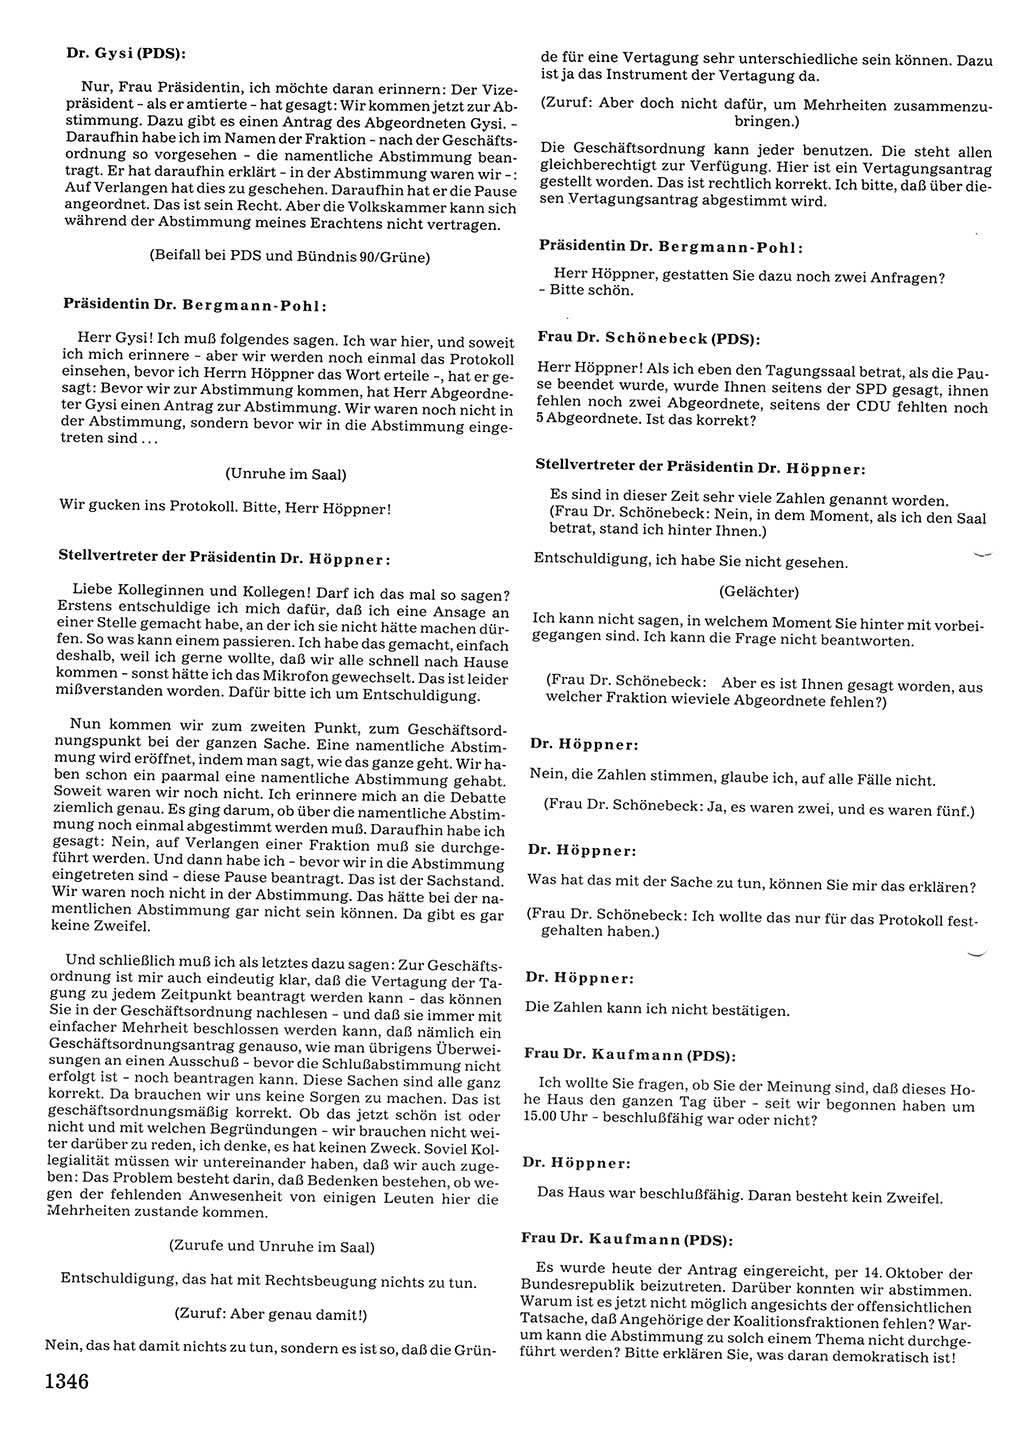 Tagungen der Volkskammer (VK) der Deutschen Demokratischen Republik (DDR), 10. Wahlperiode 1990, Seite 1346 (VK. DDR 10. WP. 1990, Prot. Tg. 1-38, 5.4.-2.10.1990, S. 1346)